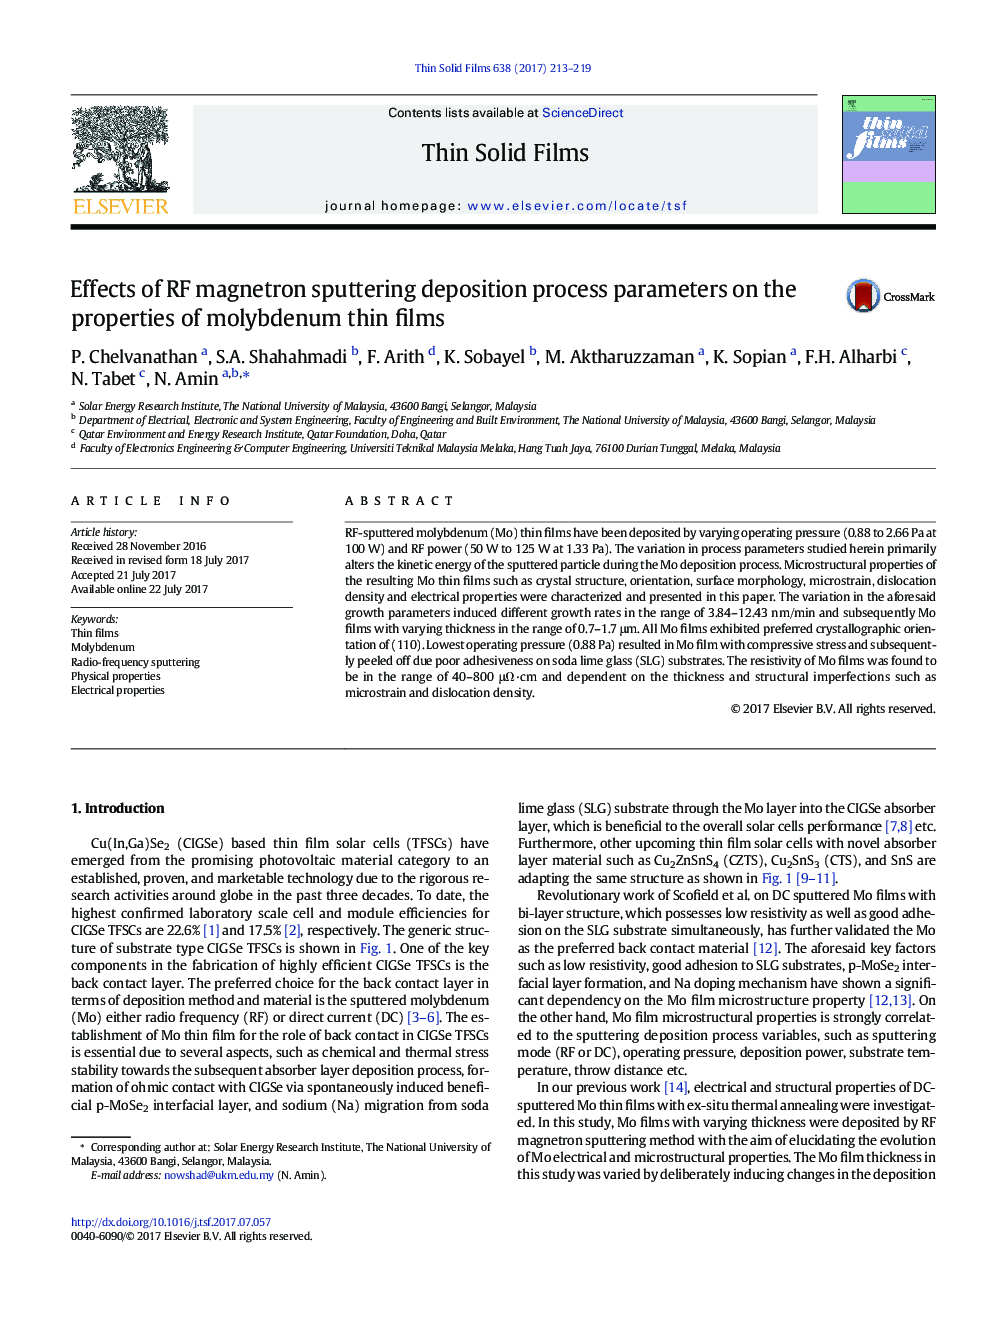 تاثیر پارامترهای فرآیند پارامتر اسپکترومغناطیسی مگنترون در خواص نازک مولیبدن 